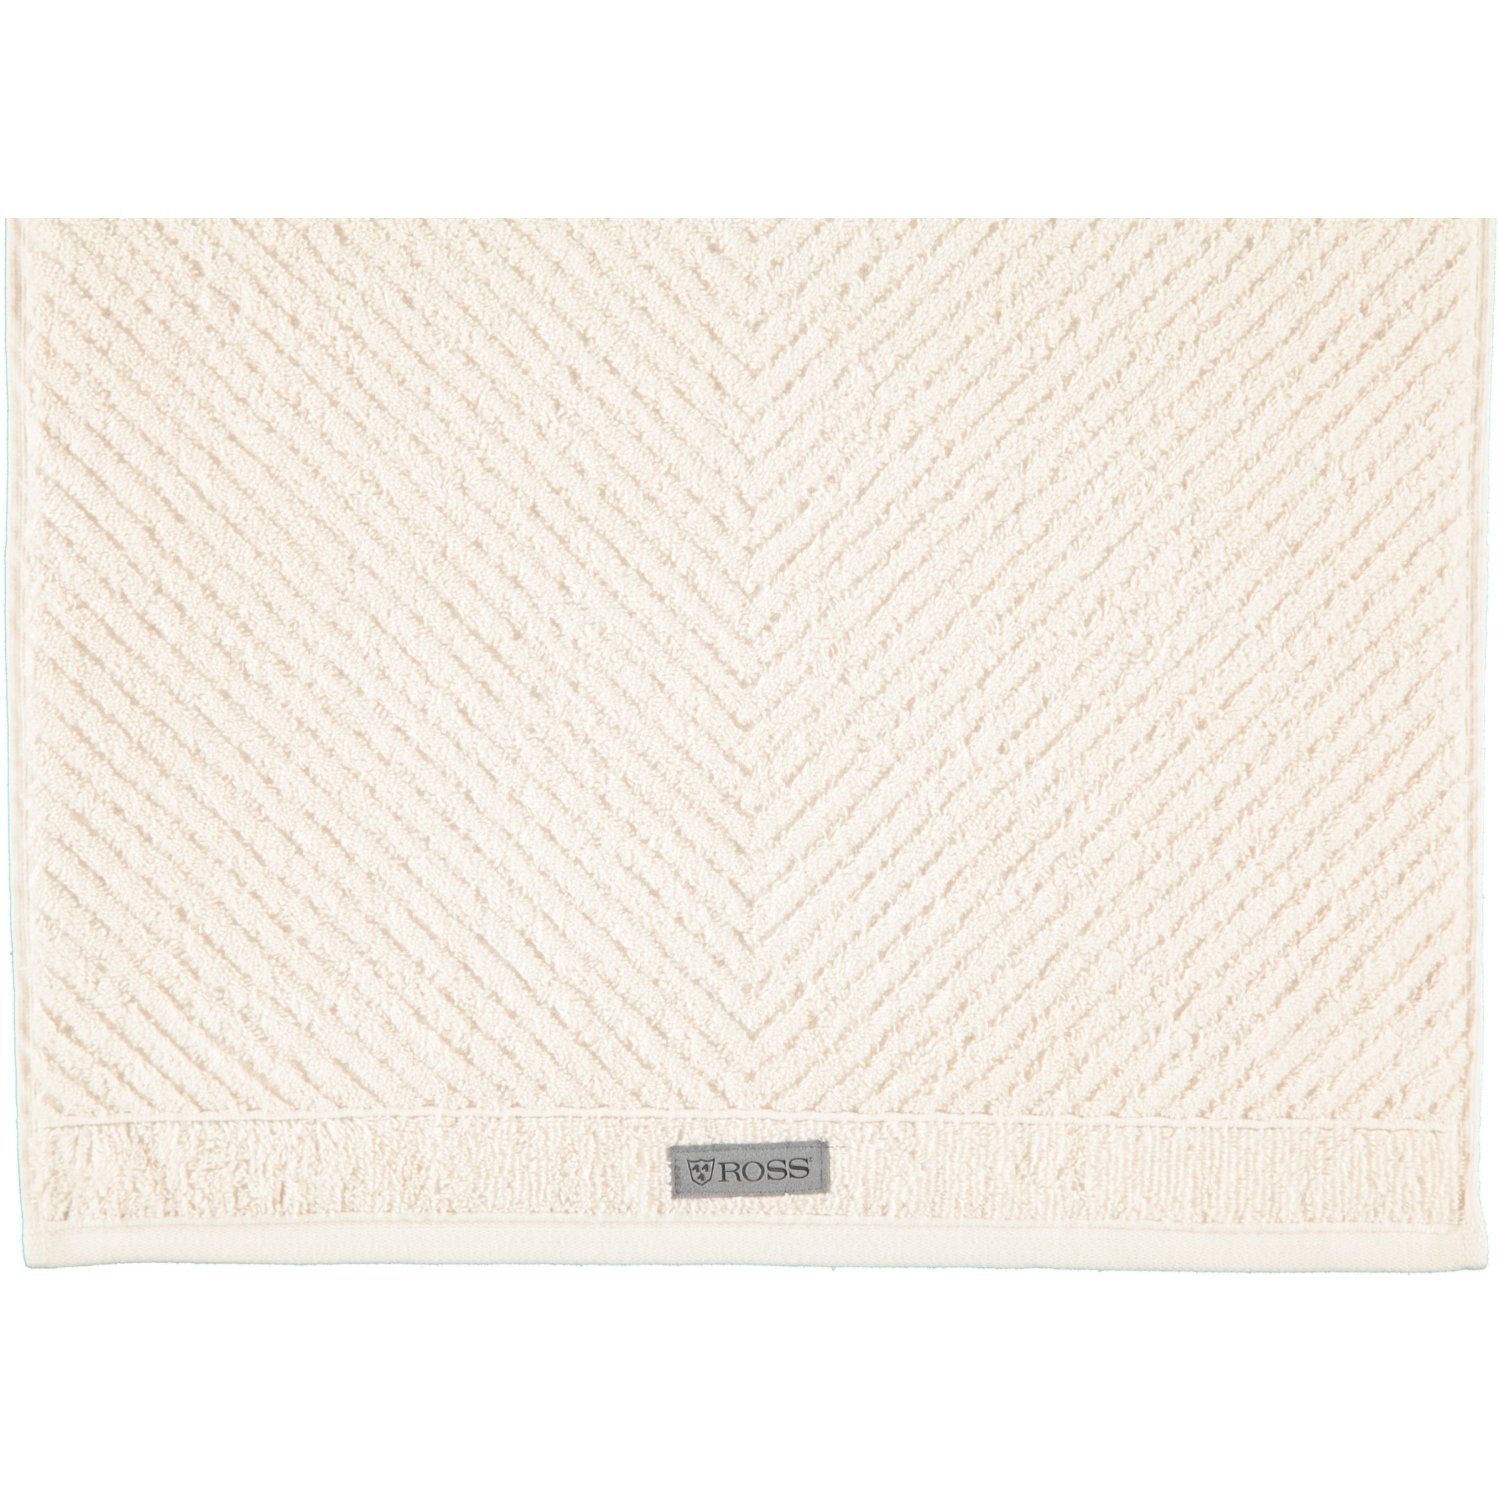 Smart elfenbein 4006, 54 100% ROSS Handtücher Baumwolle -